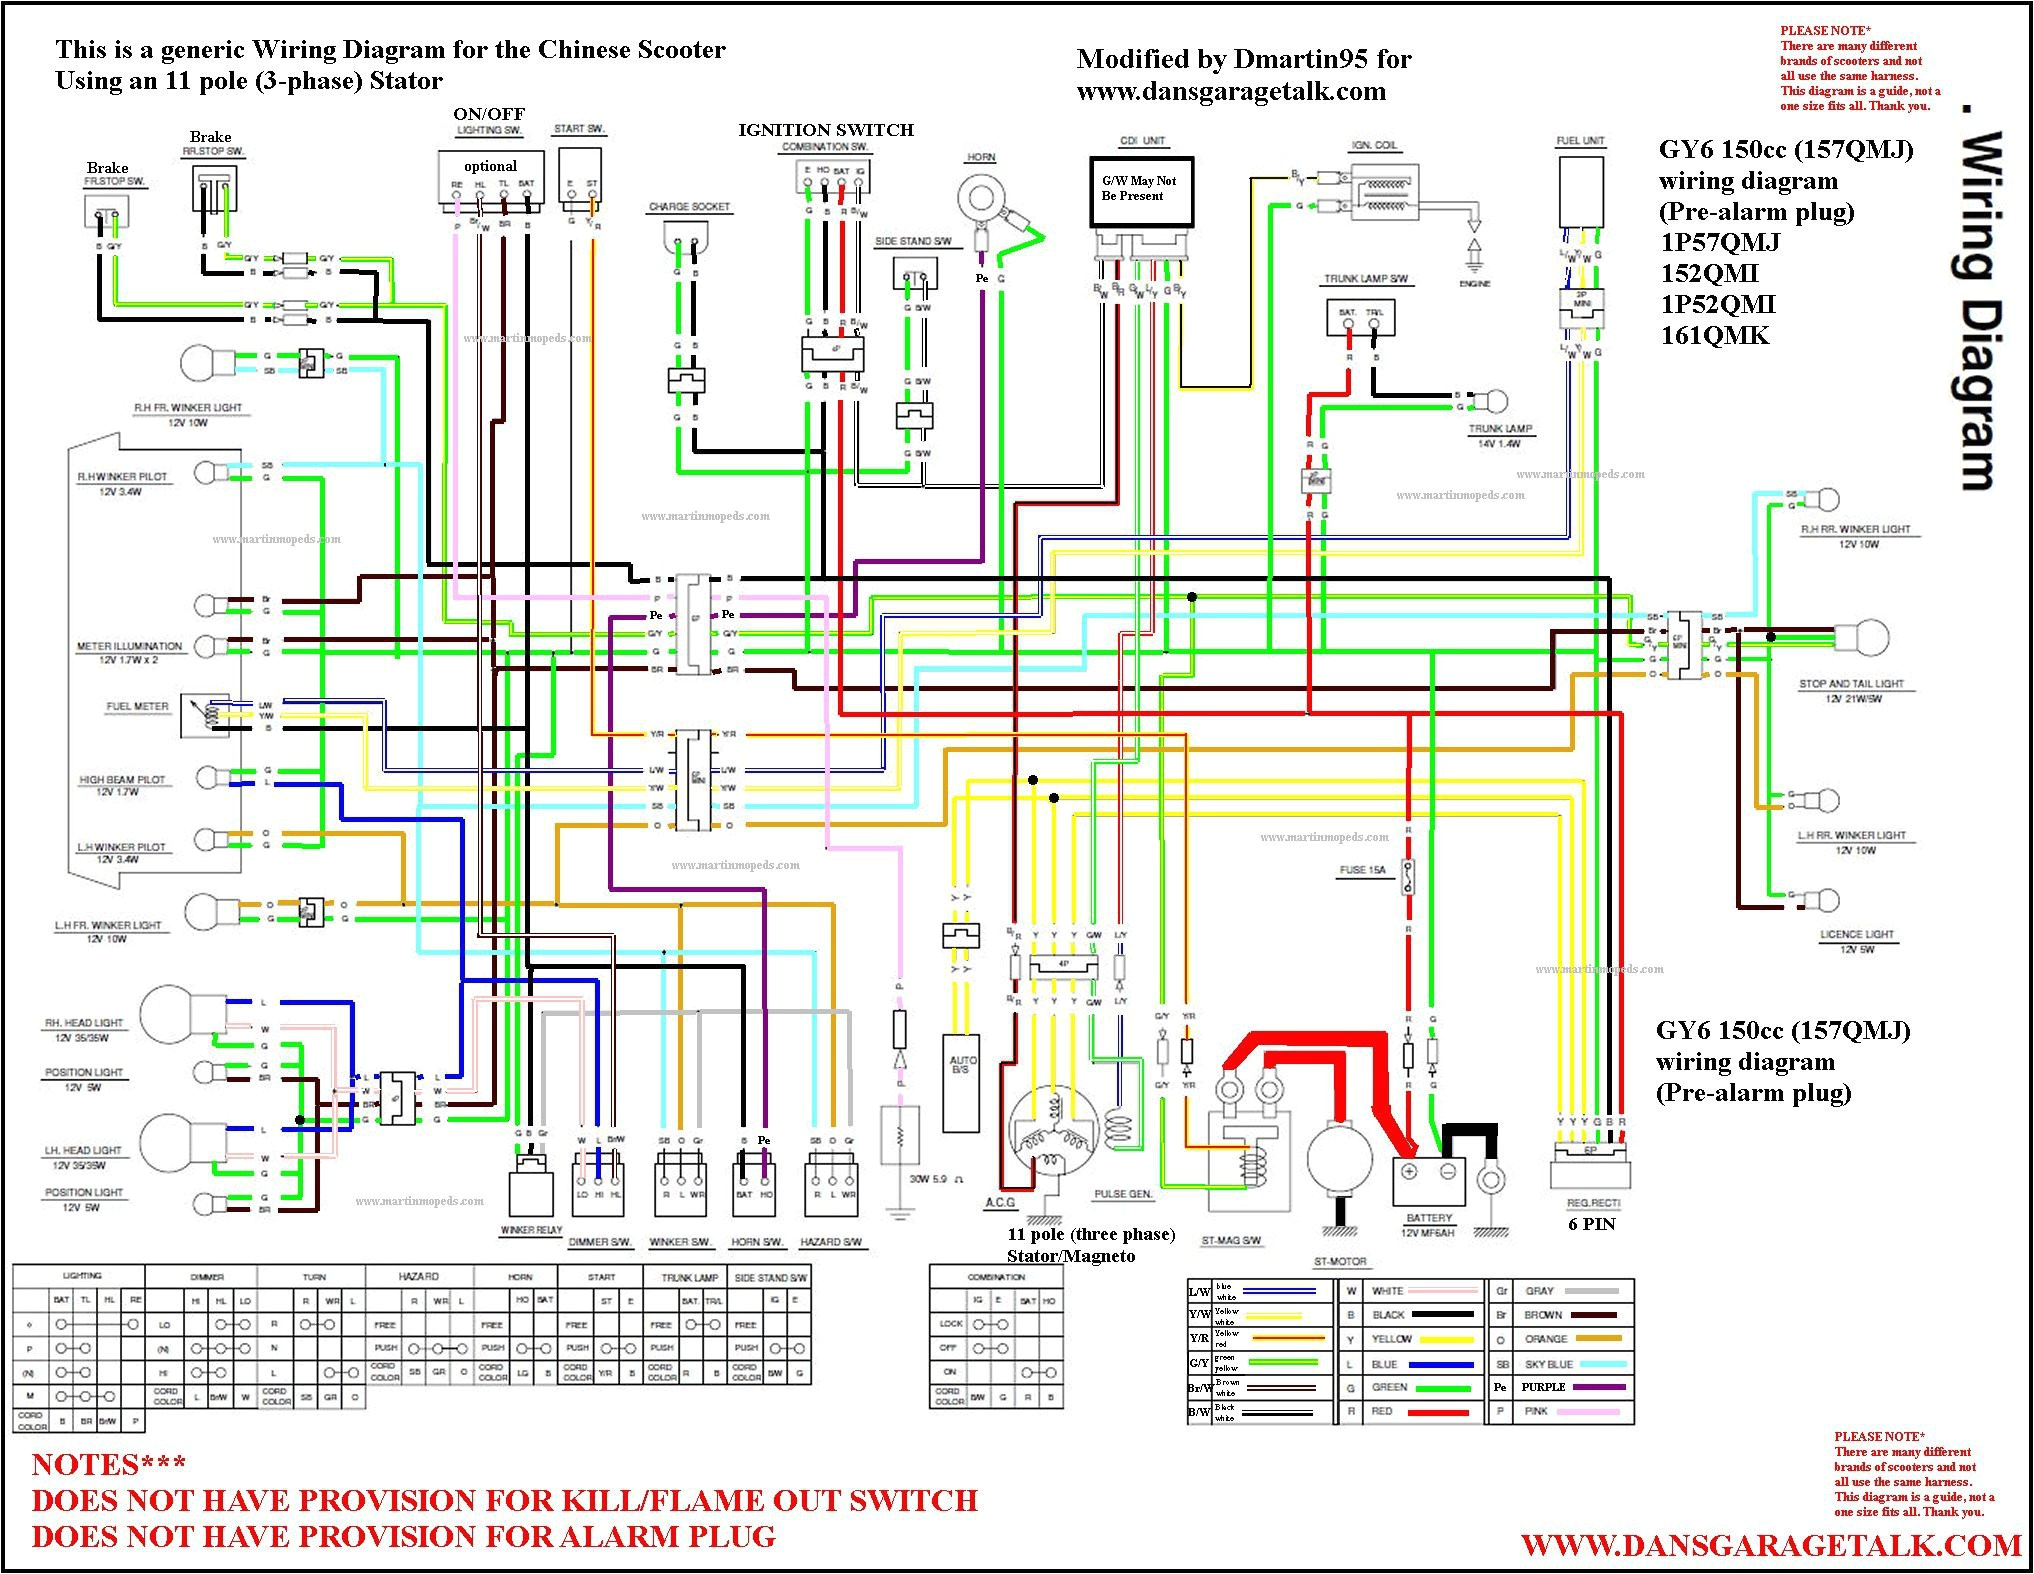 50cc chinese scooter wiring diagram fresh diagrams schematics of schwinn stealth 1000 11 jpg